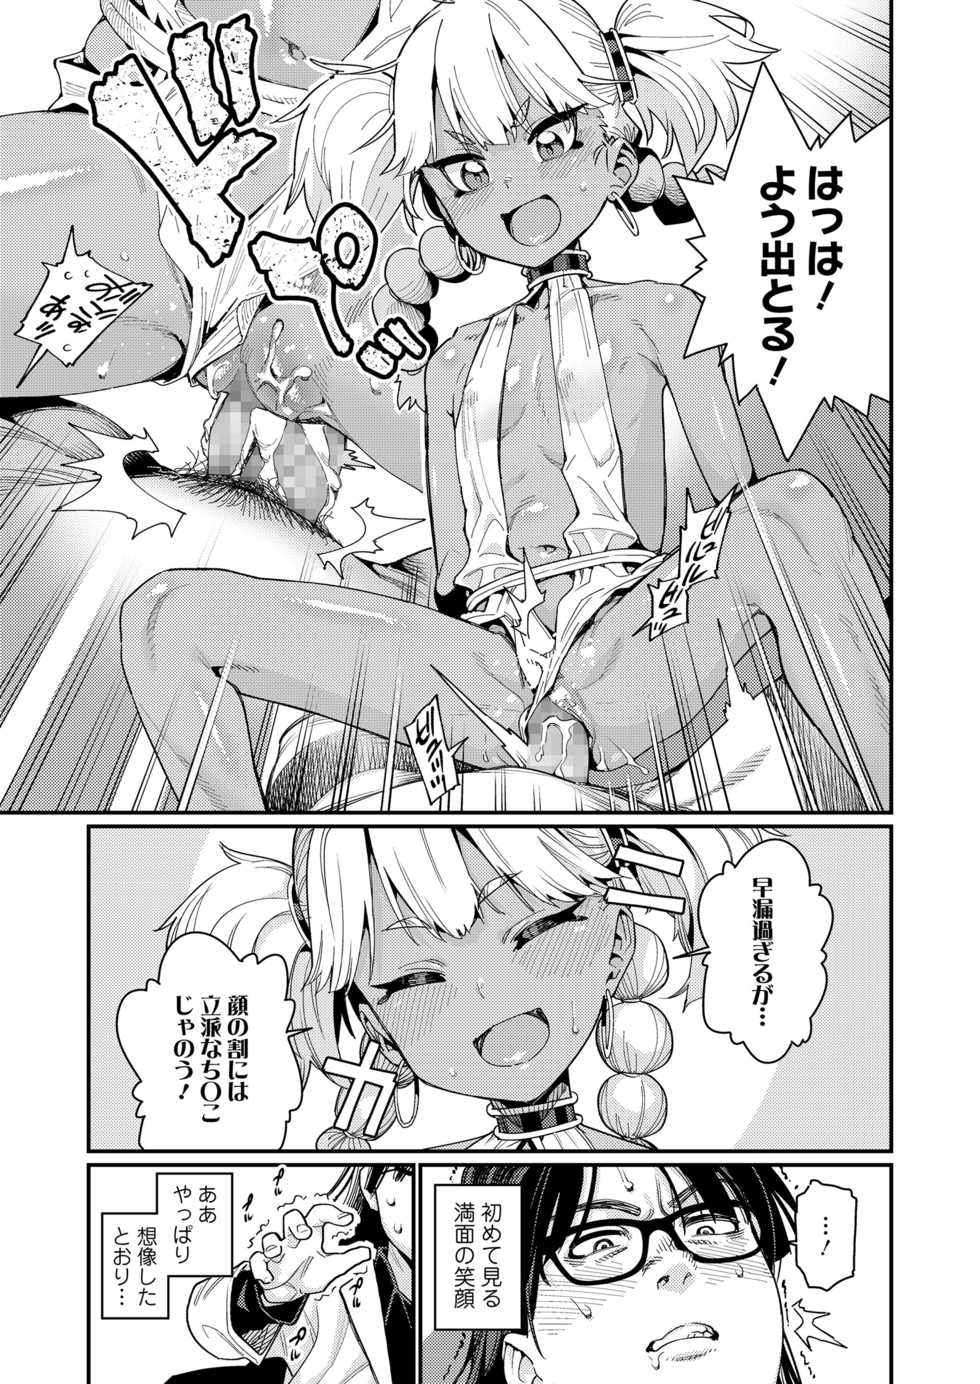 Towako 10 [Digital] - Page 19